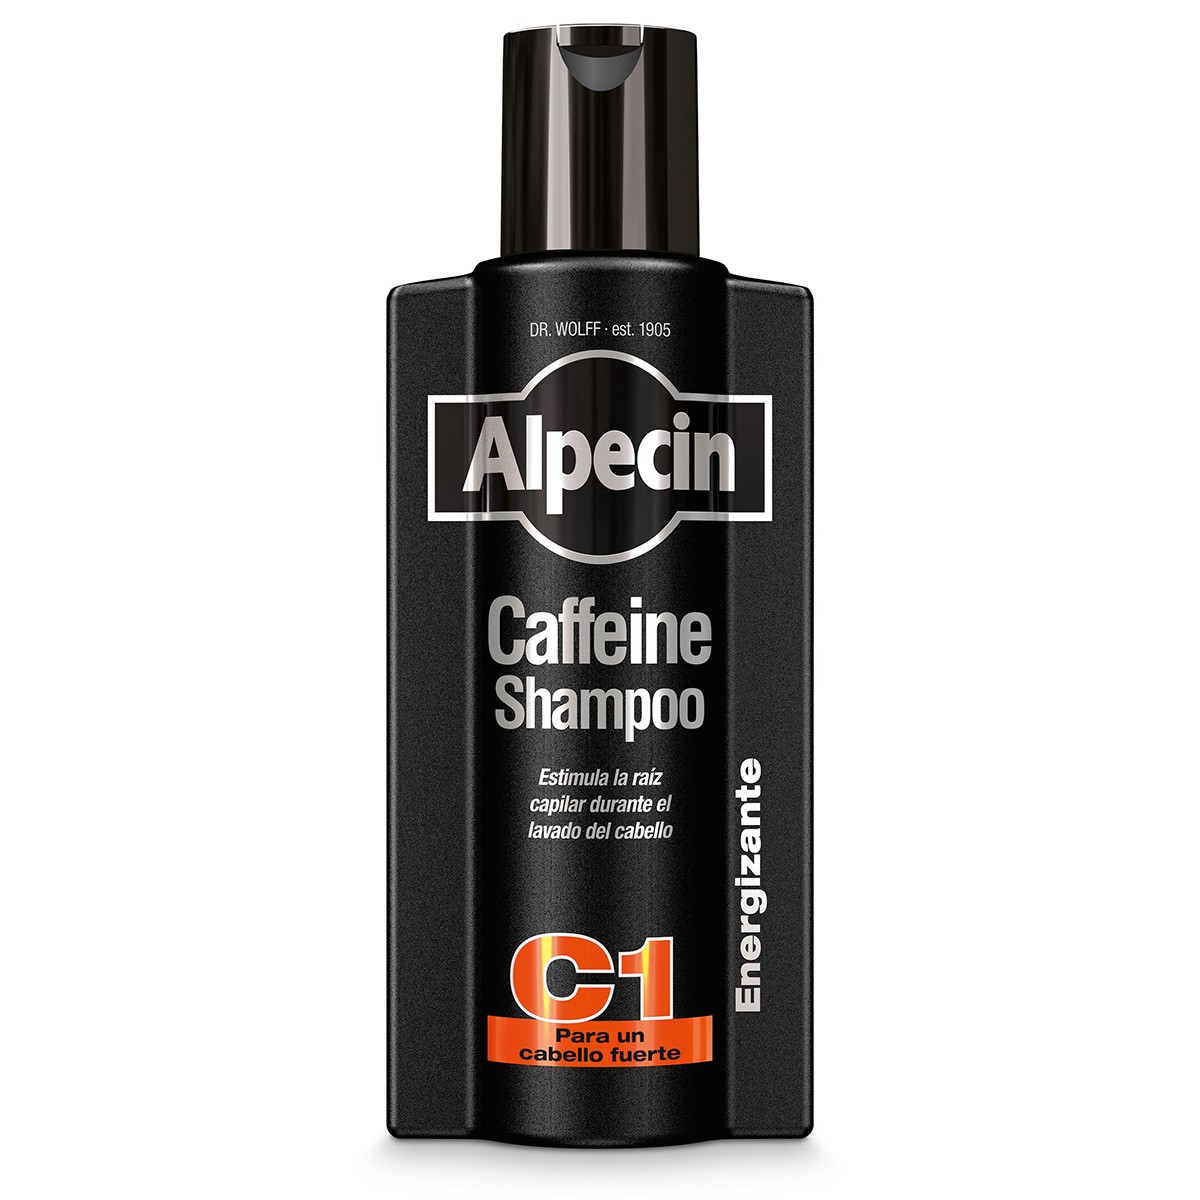 Alpecin Black Edition Champú C1 con Cafeína 375ml